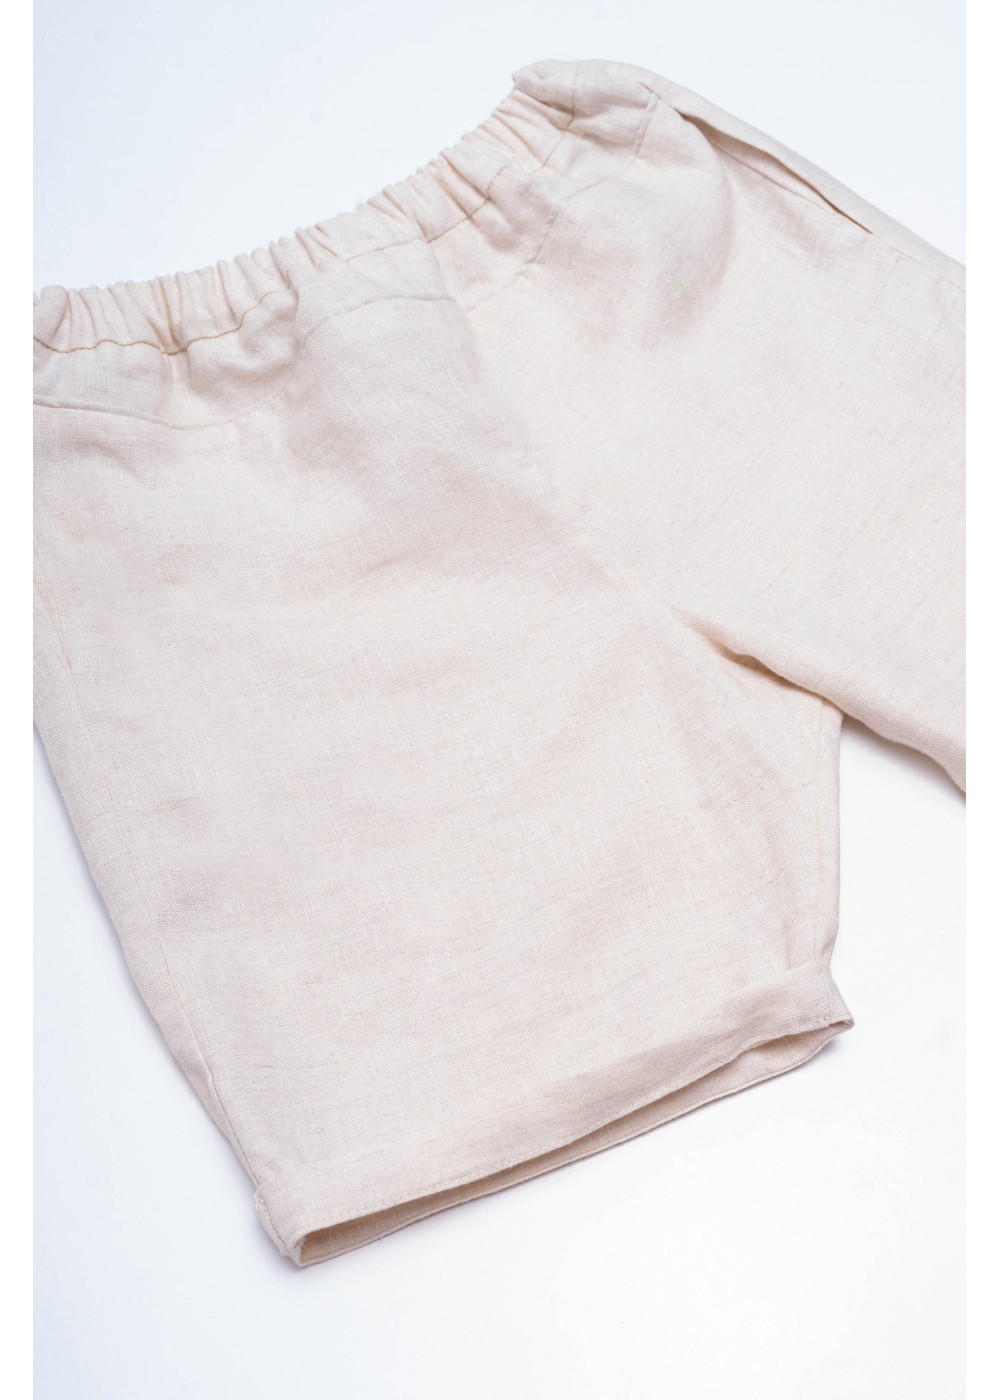 Shorts Ari, linen shorts, elastic waistband, beige